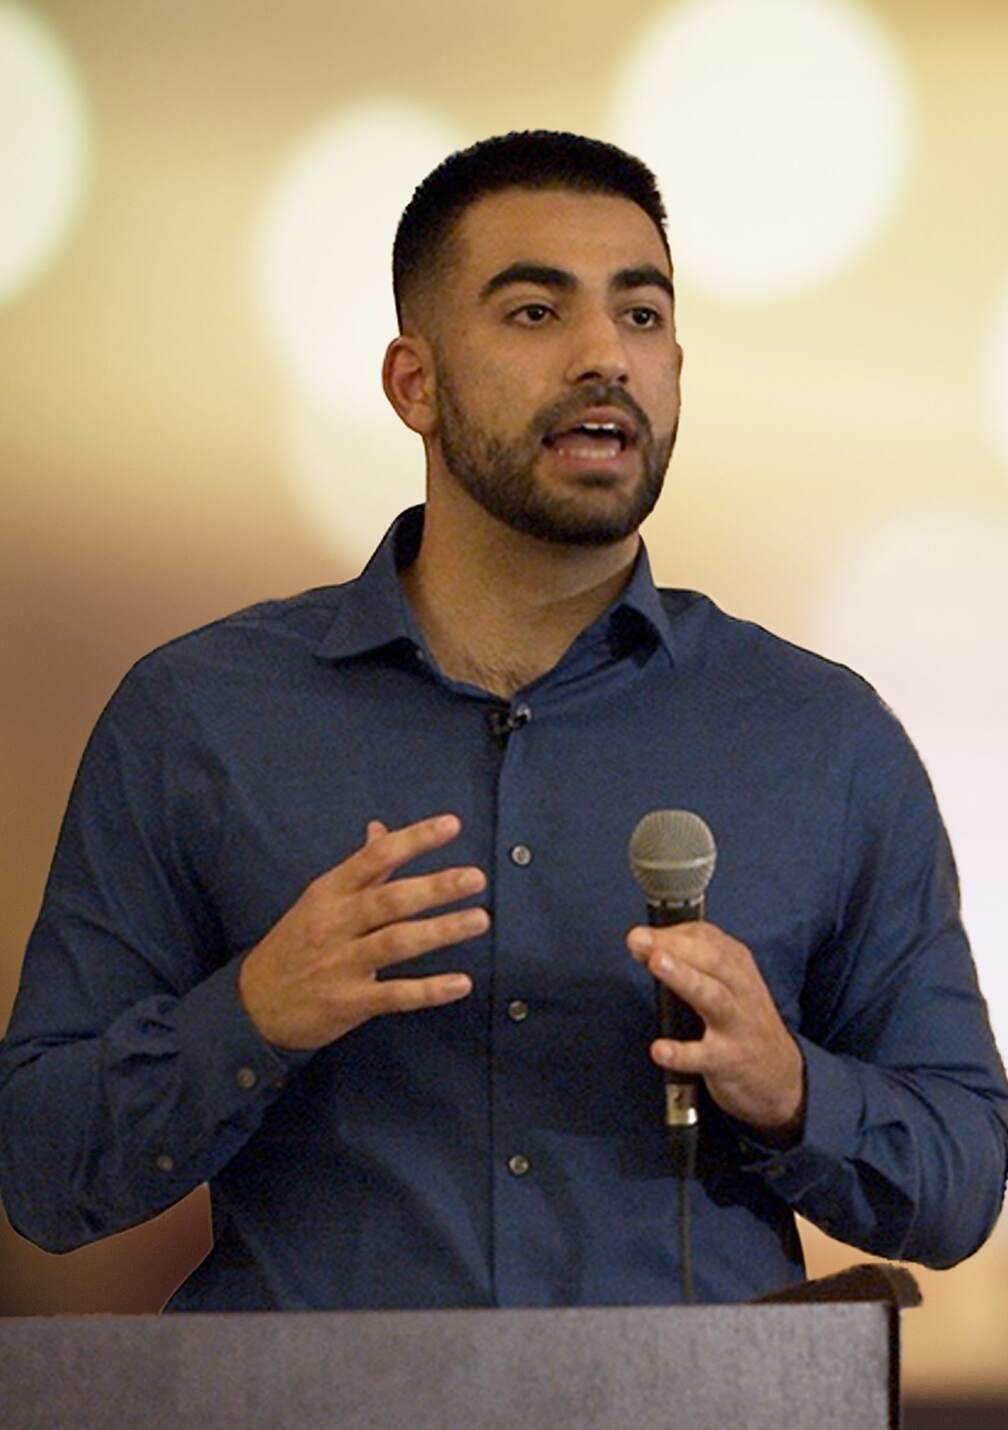 Amin Shaykho giving a talk at the University of California.